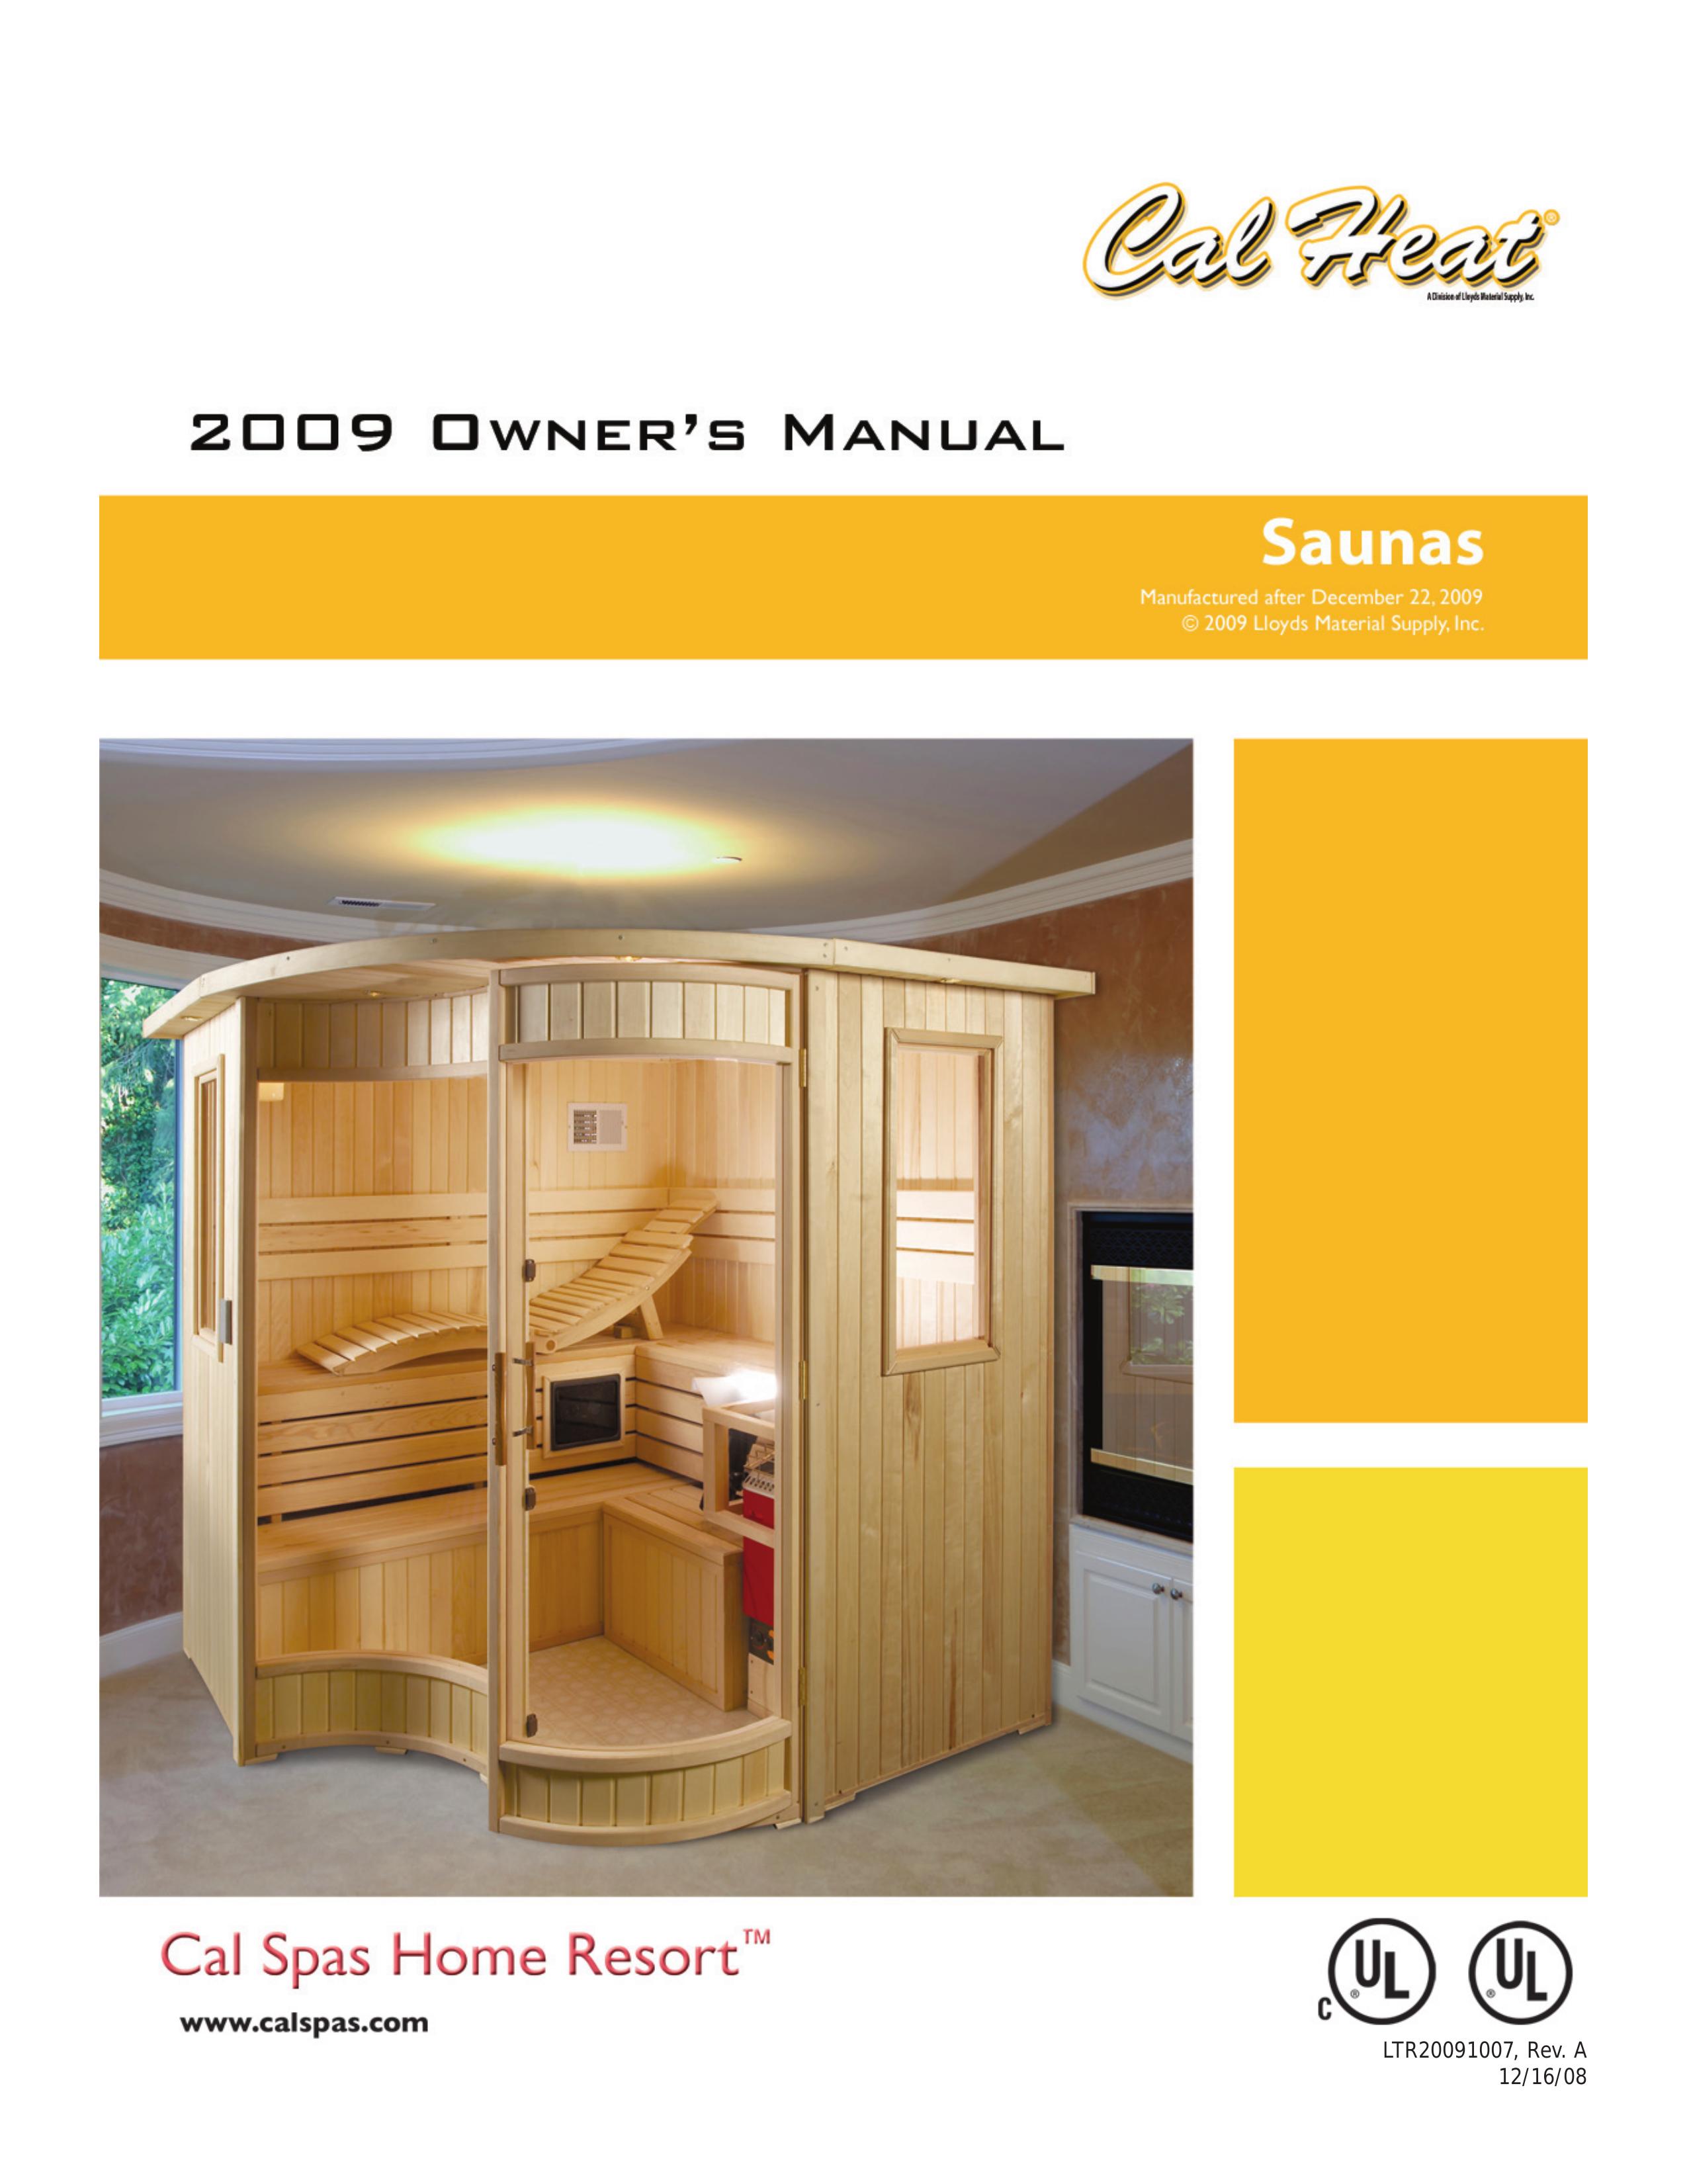 Cal Spas Saunas Hot Tub User Manual